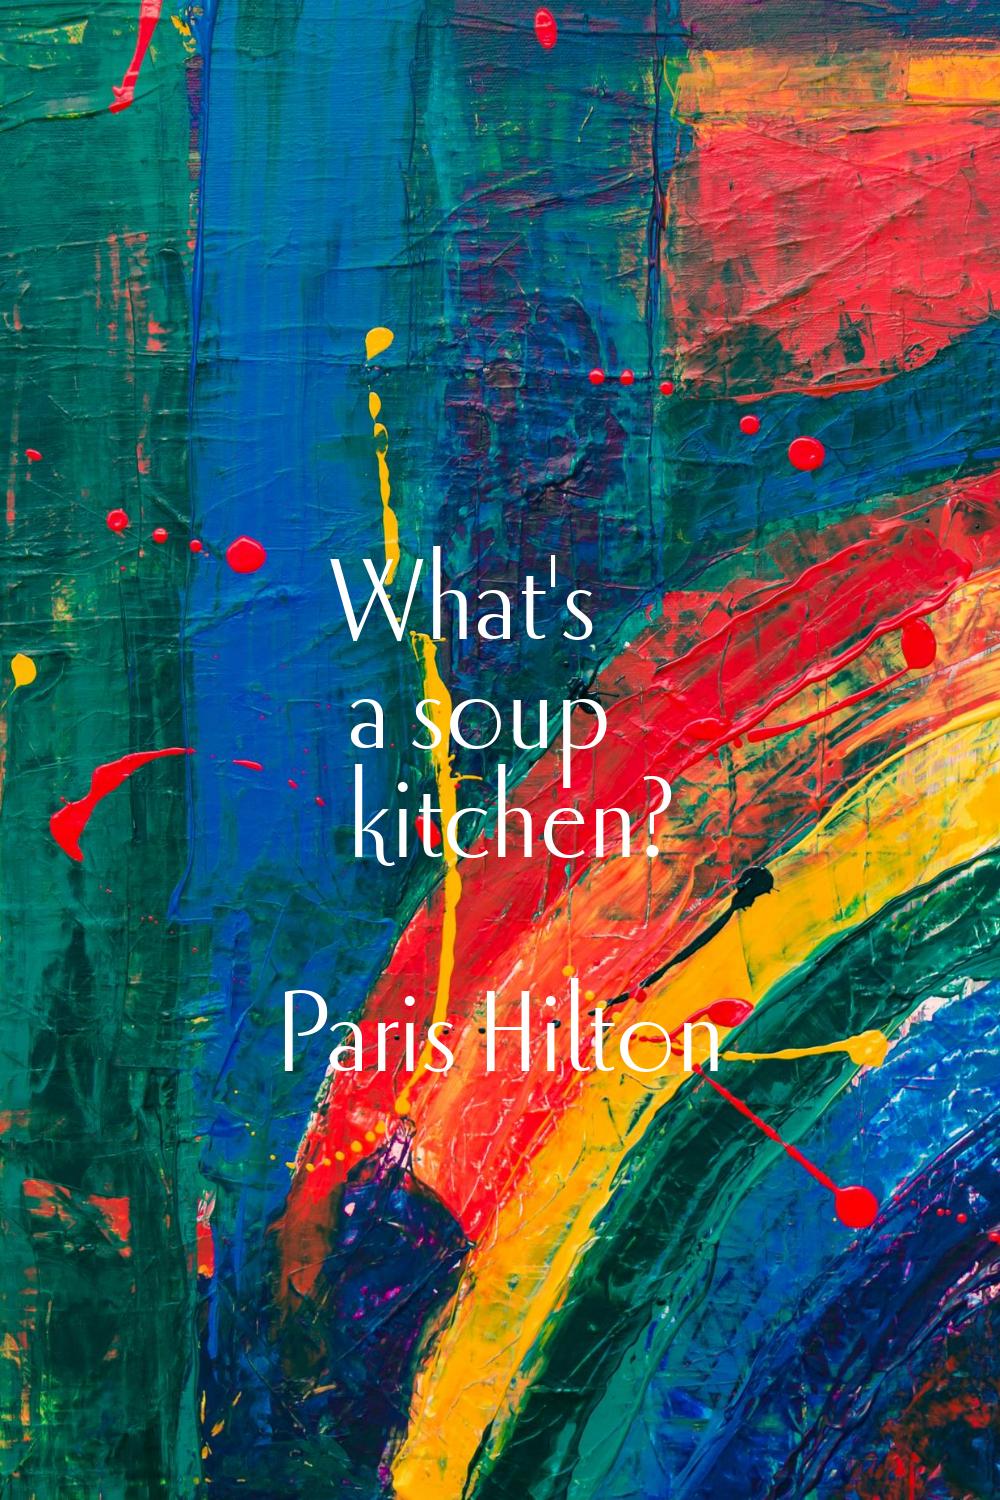 What's a soup kitchen?